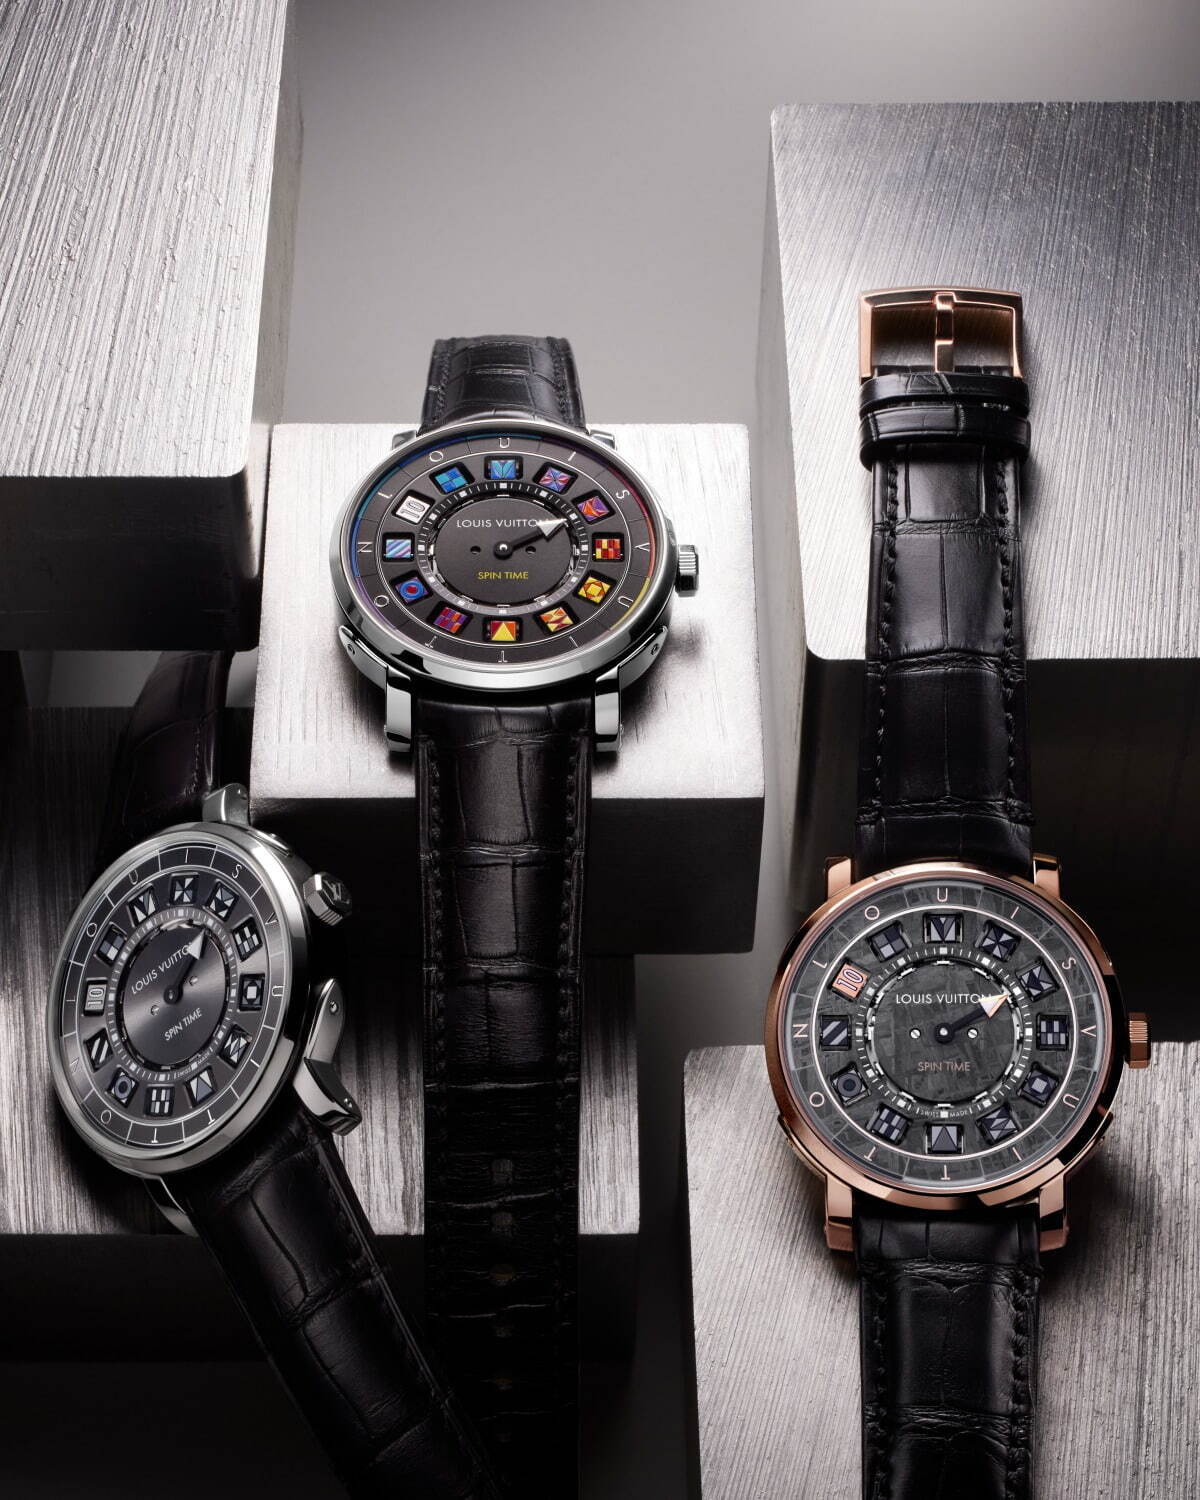 ルイ ヴィトン新作メンズ腕時計 エスカル スピン タイム スティール 回転キューブが時刻を表示 ファッションプレス